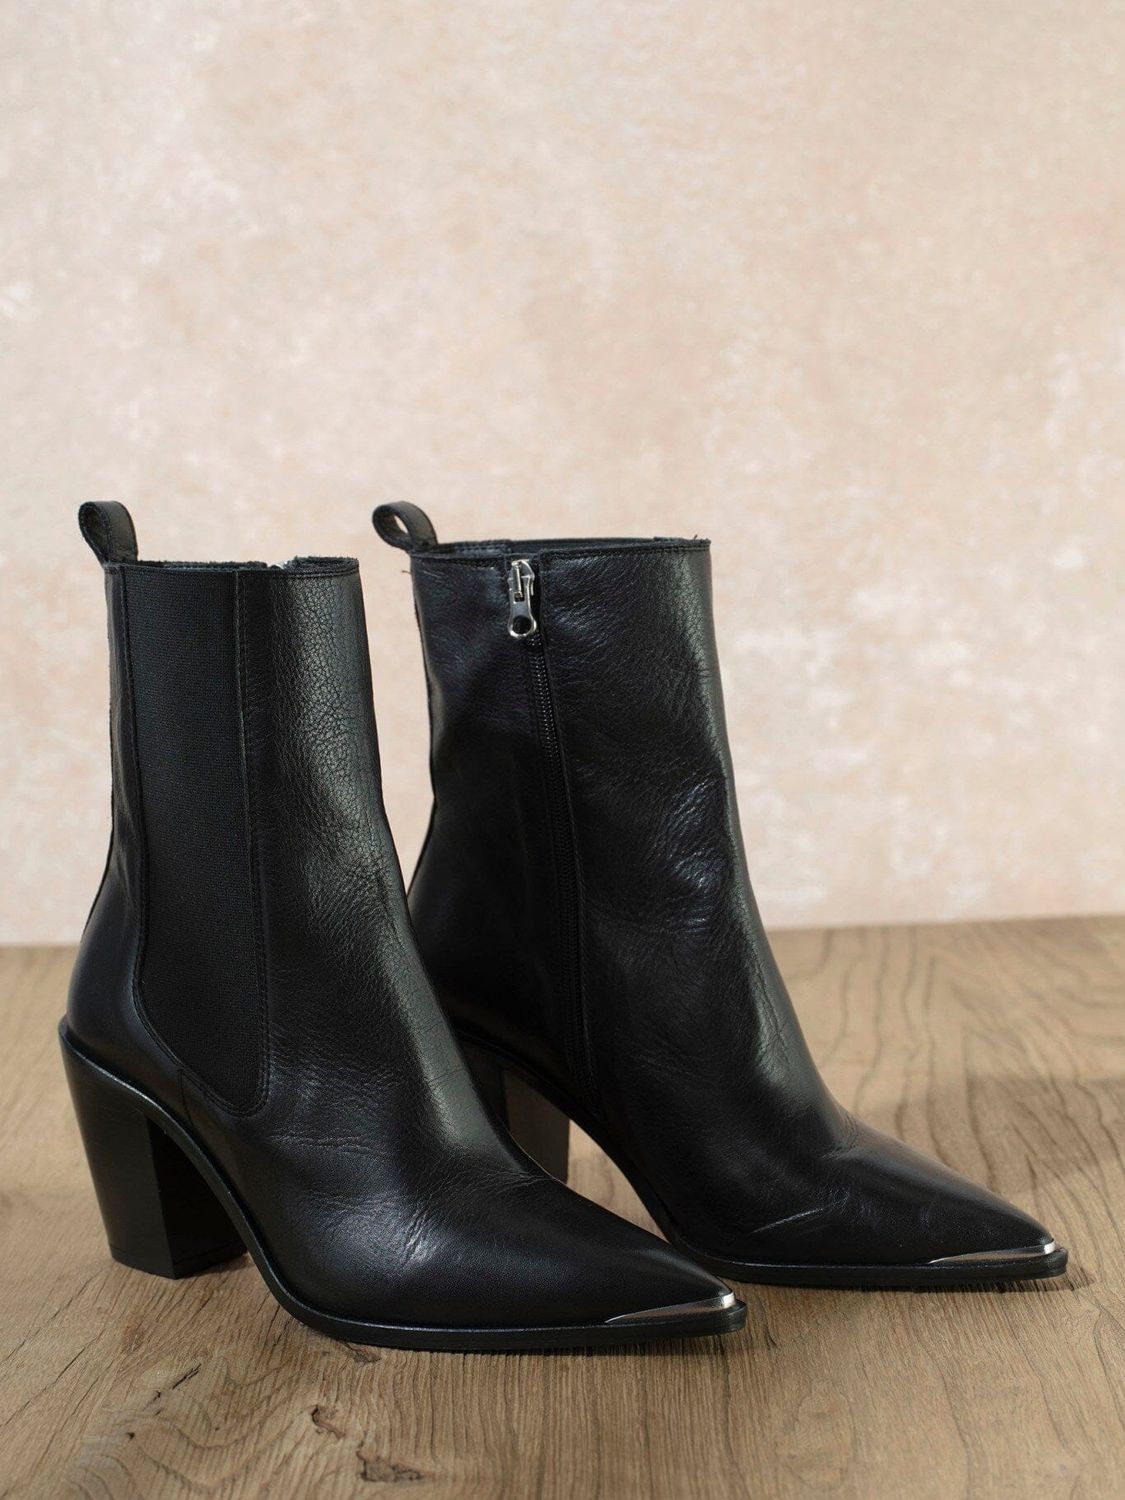 Mint Velvet Sydney Leather Cowboy Boots, Black, 3